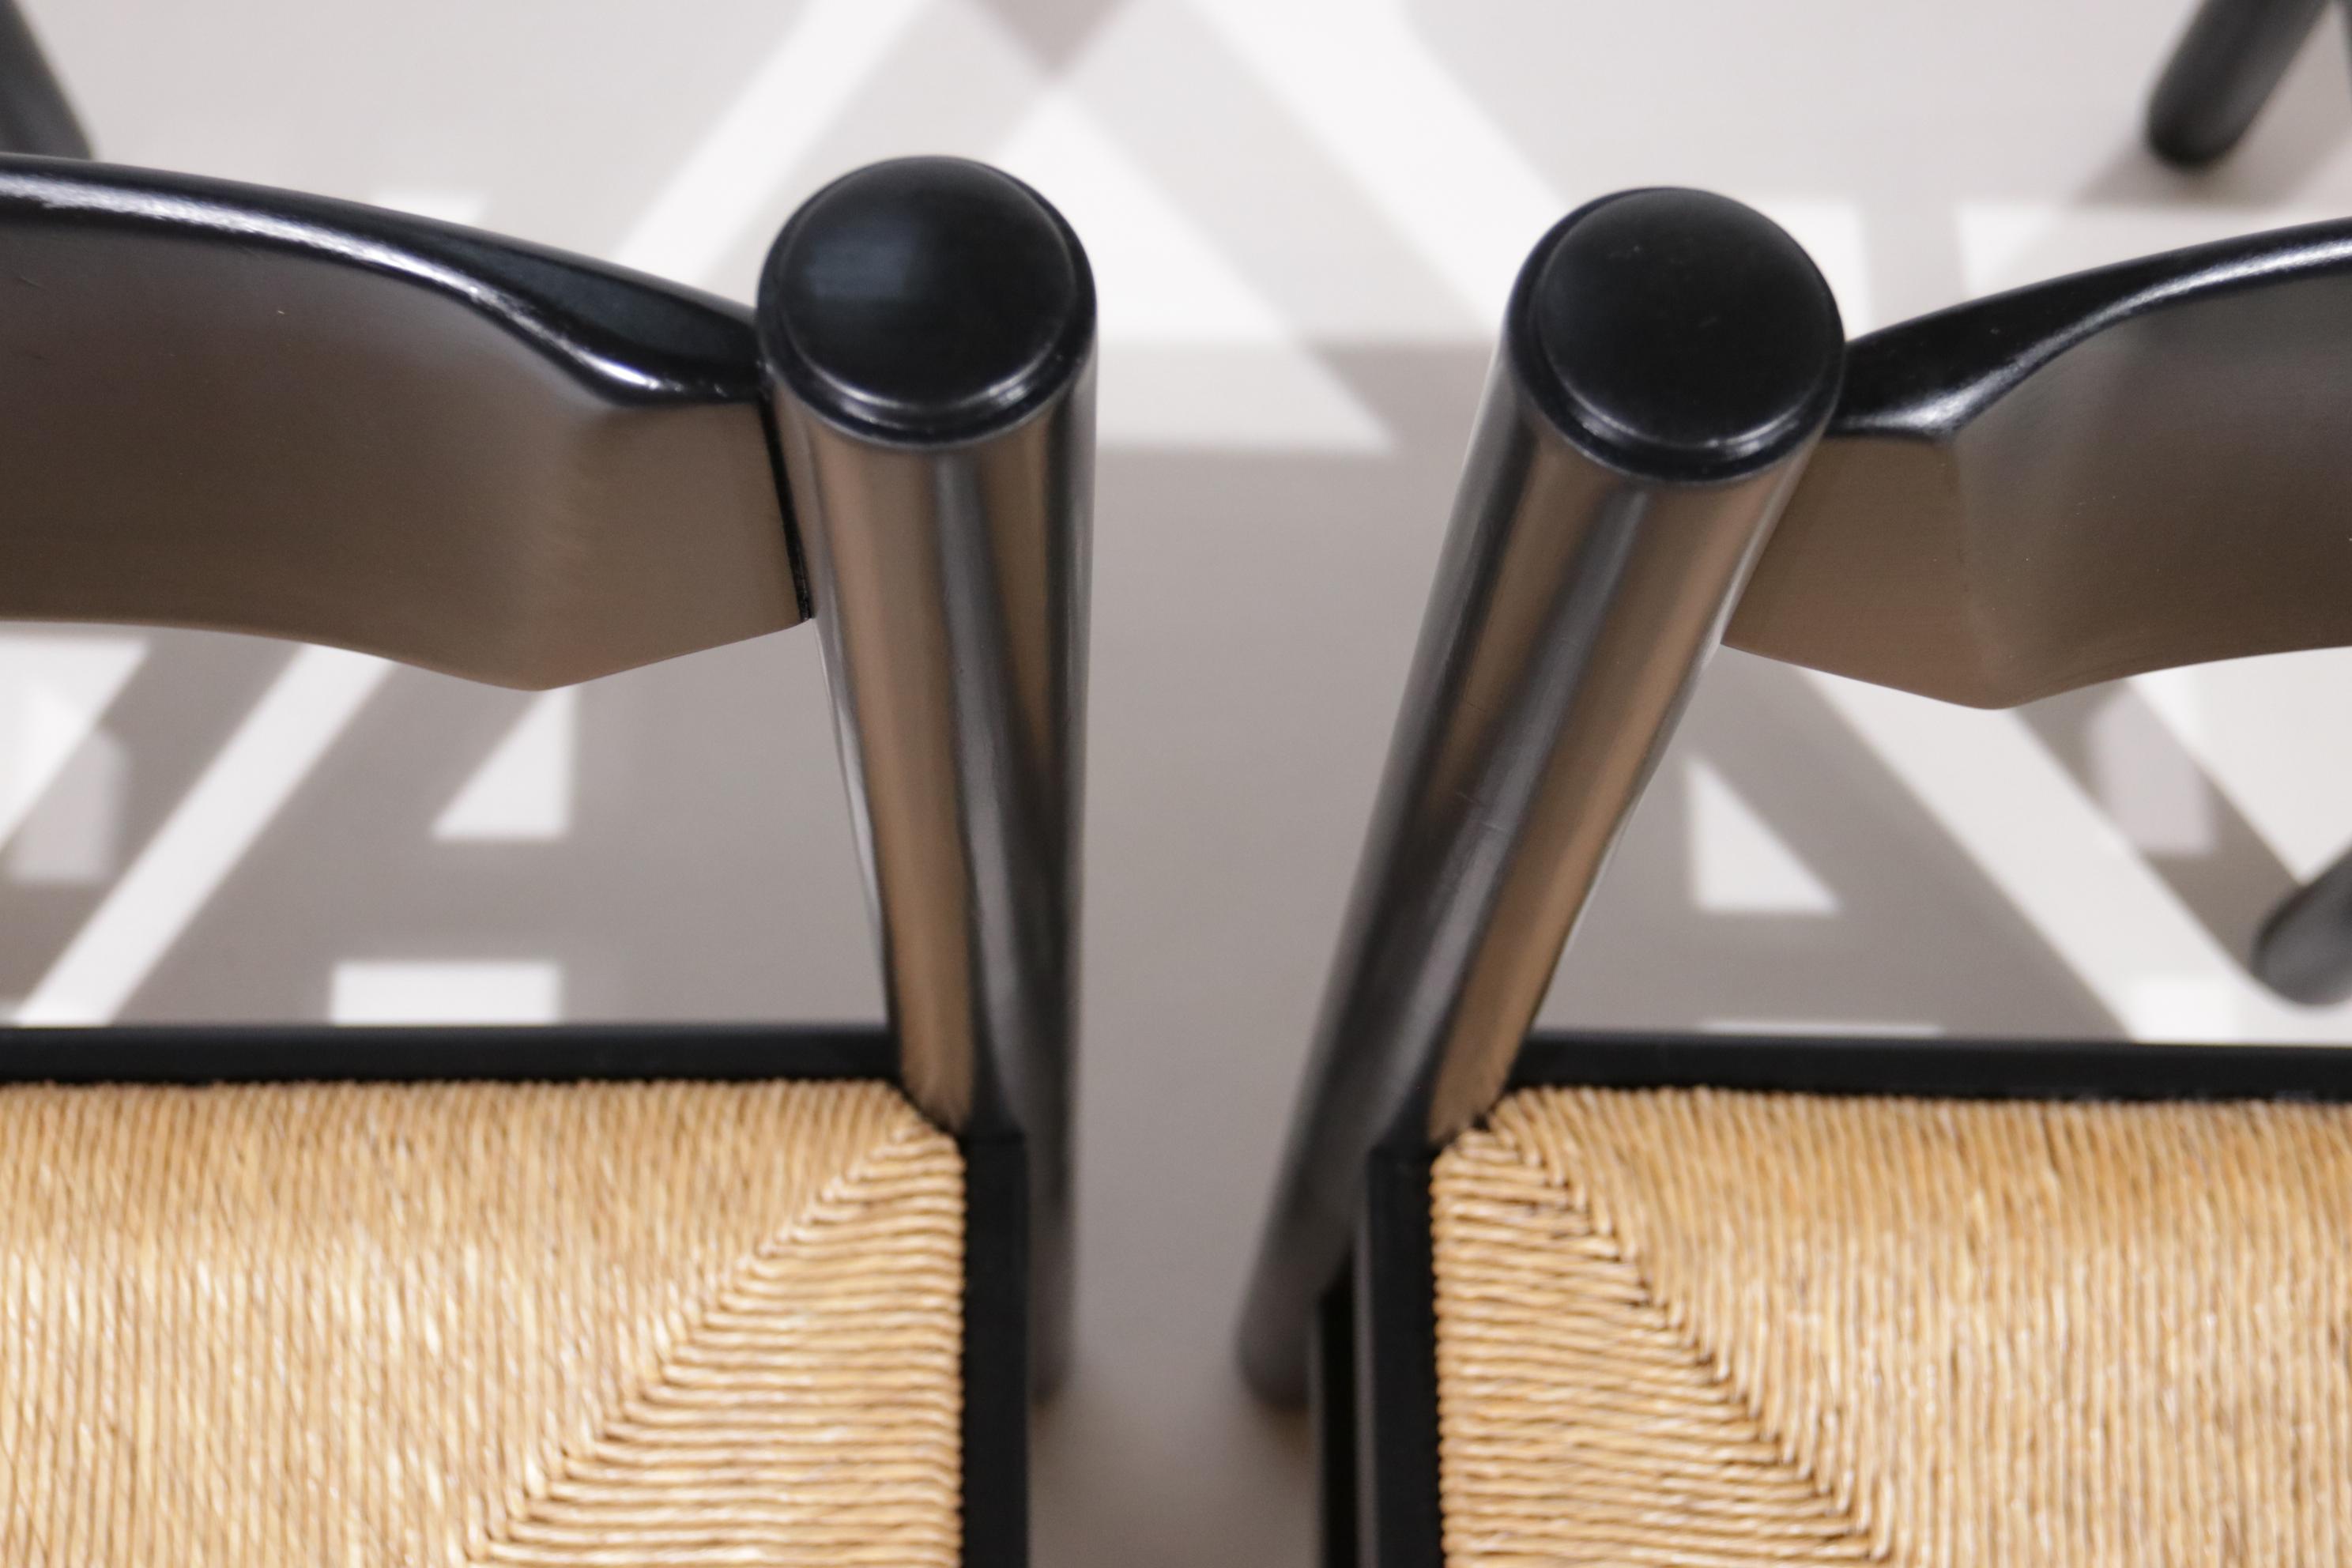 Diese Stühle werden oft Vico Magistretti zugeschrieben, hergestellt von Cassina (attr.). Hergestellt in Italien, aus den 70er Jahren.
Hergestellt aus Massivholz, schwarz lackiert und Binsen Sitz.
Passt perfekt in die Innenräume, wo ehrliche und